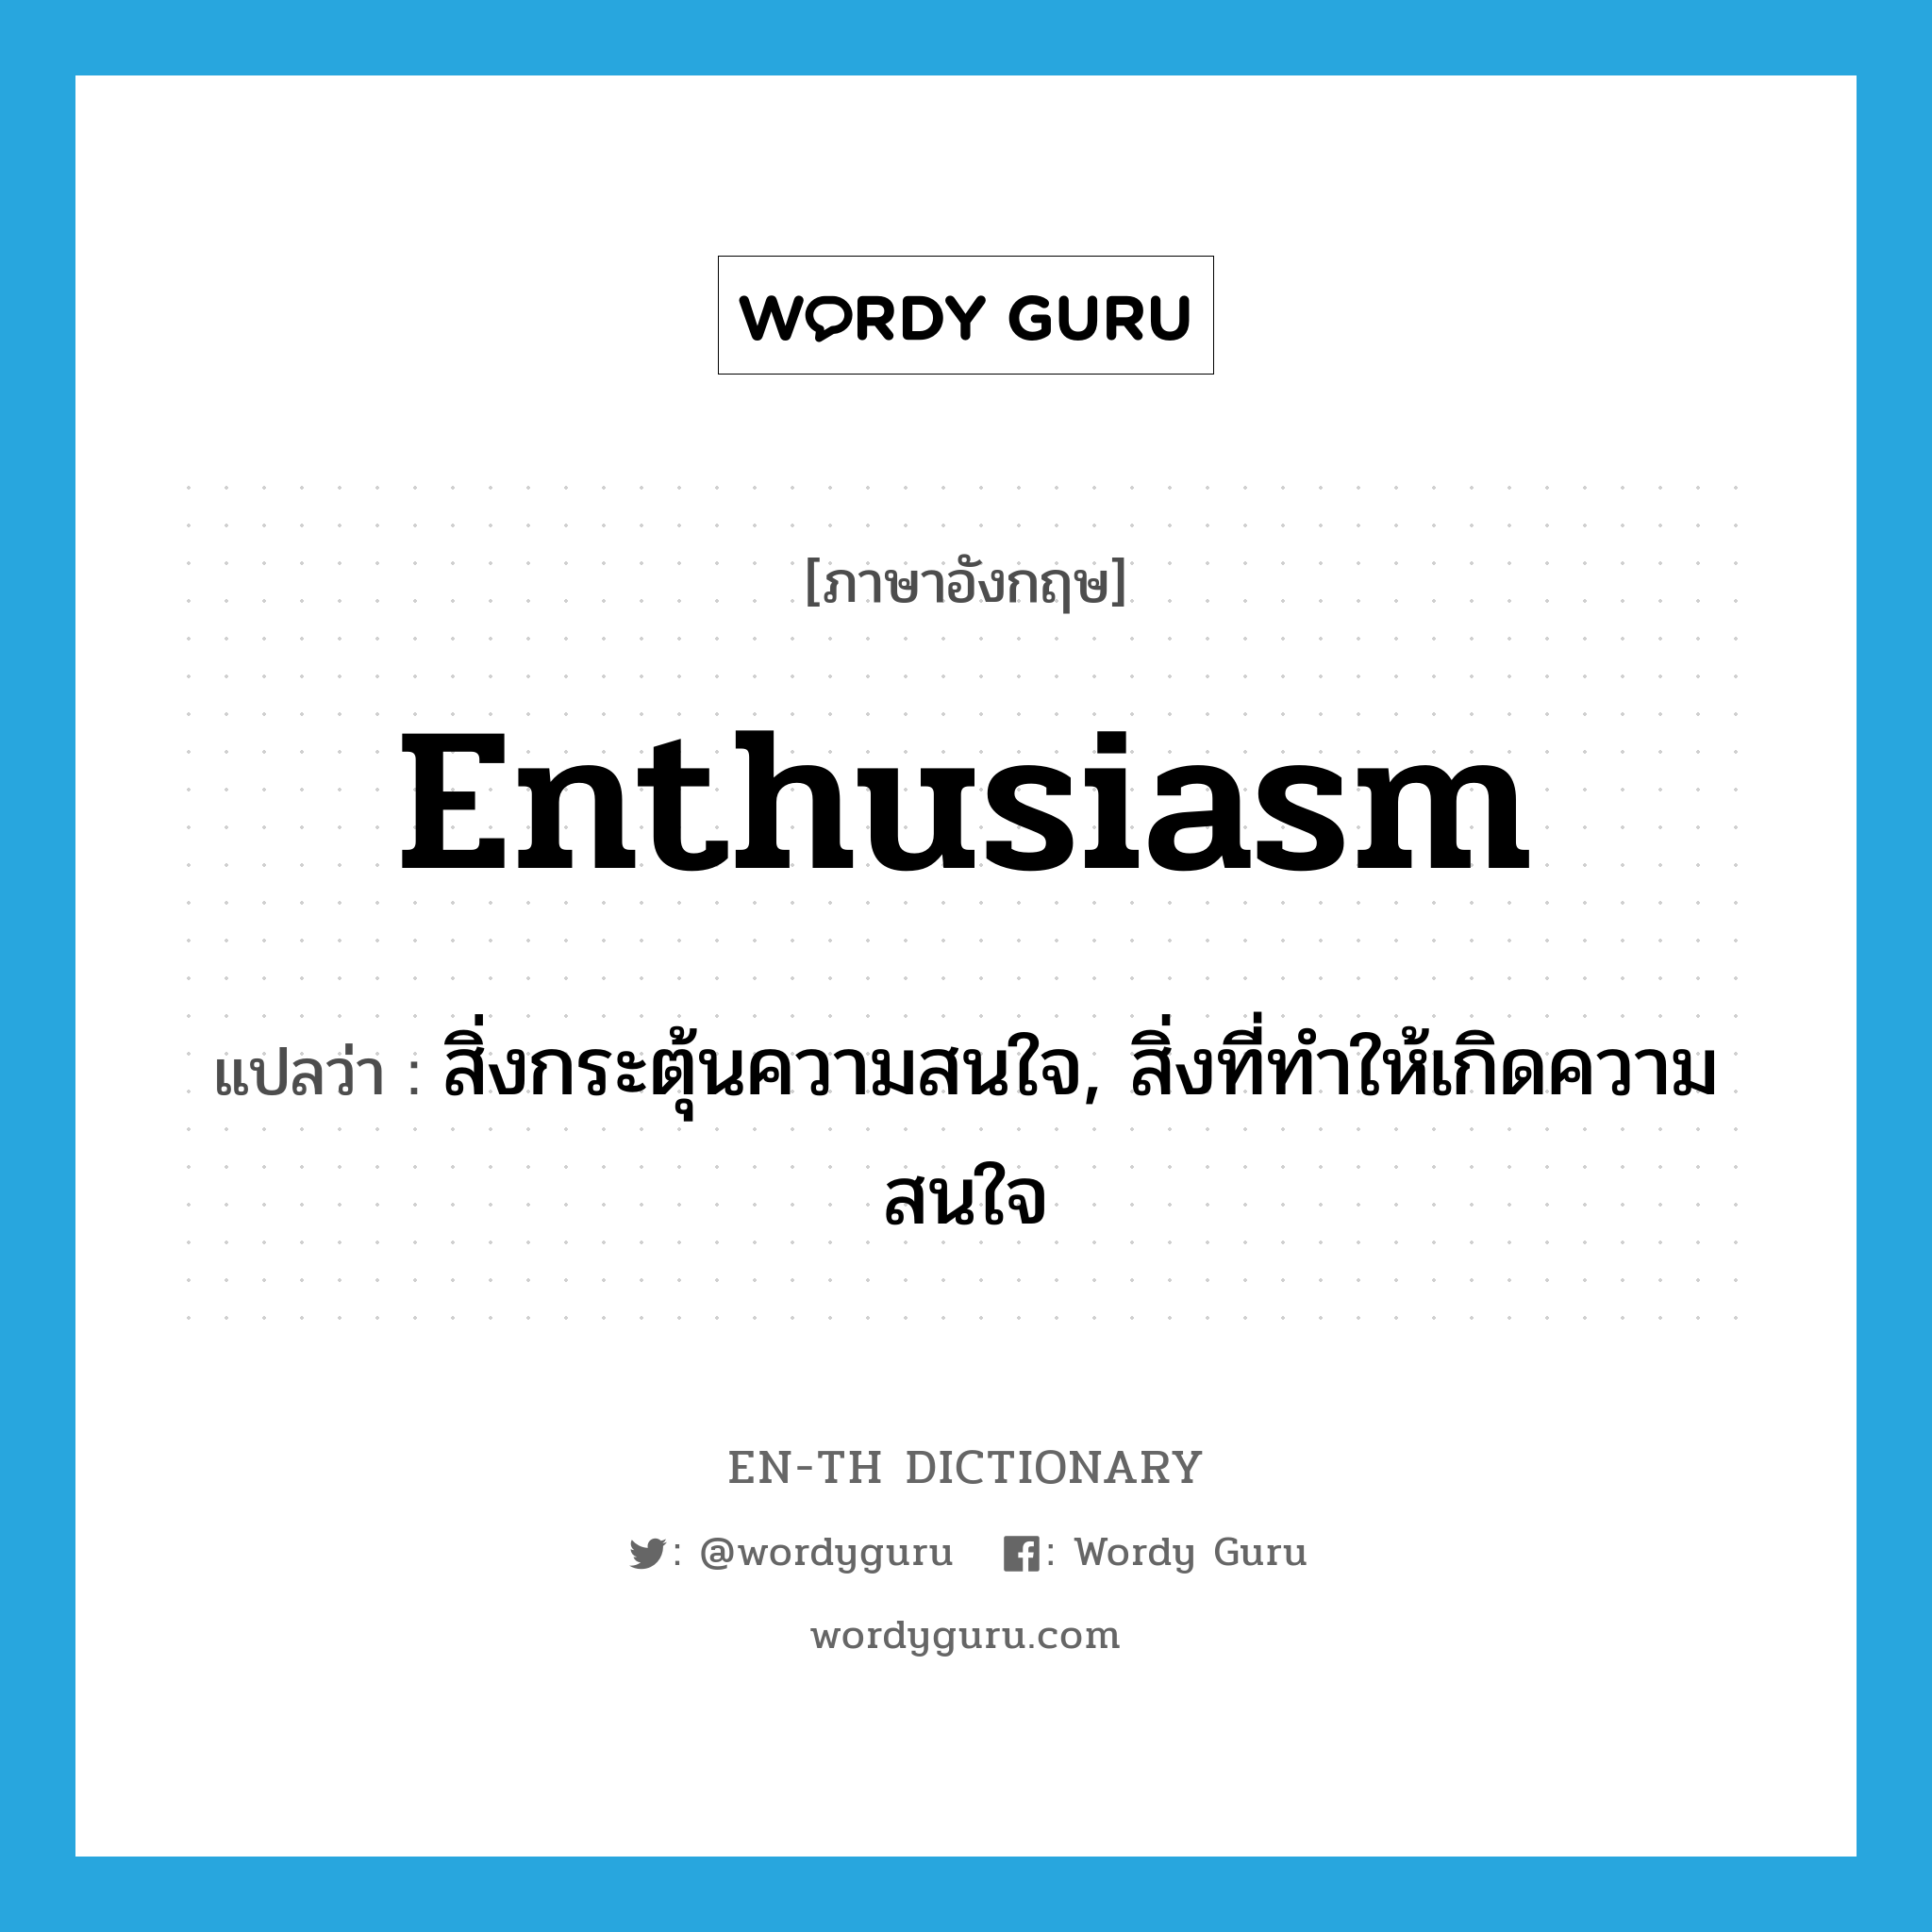 สิ่งกระตุ้นความสนใจ, สิ่งที่ทำให้เกิดความสนใจ ภาษาอังกฤษ?, คำศัพท์ภาษาอังกฤษ สิ่งกระตุ้นความสนใจ, สิ่งที่ทำให้เกิดความสนใจ แปลว่า enthusiasm ประเภท N หมวด N